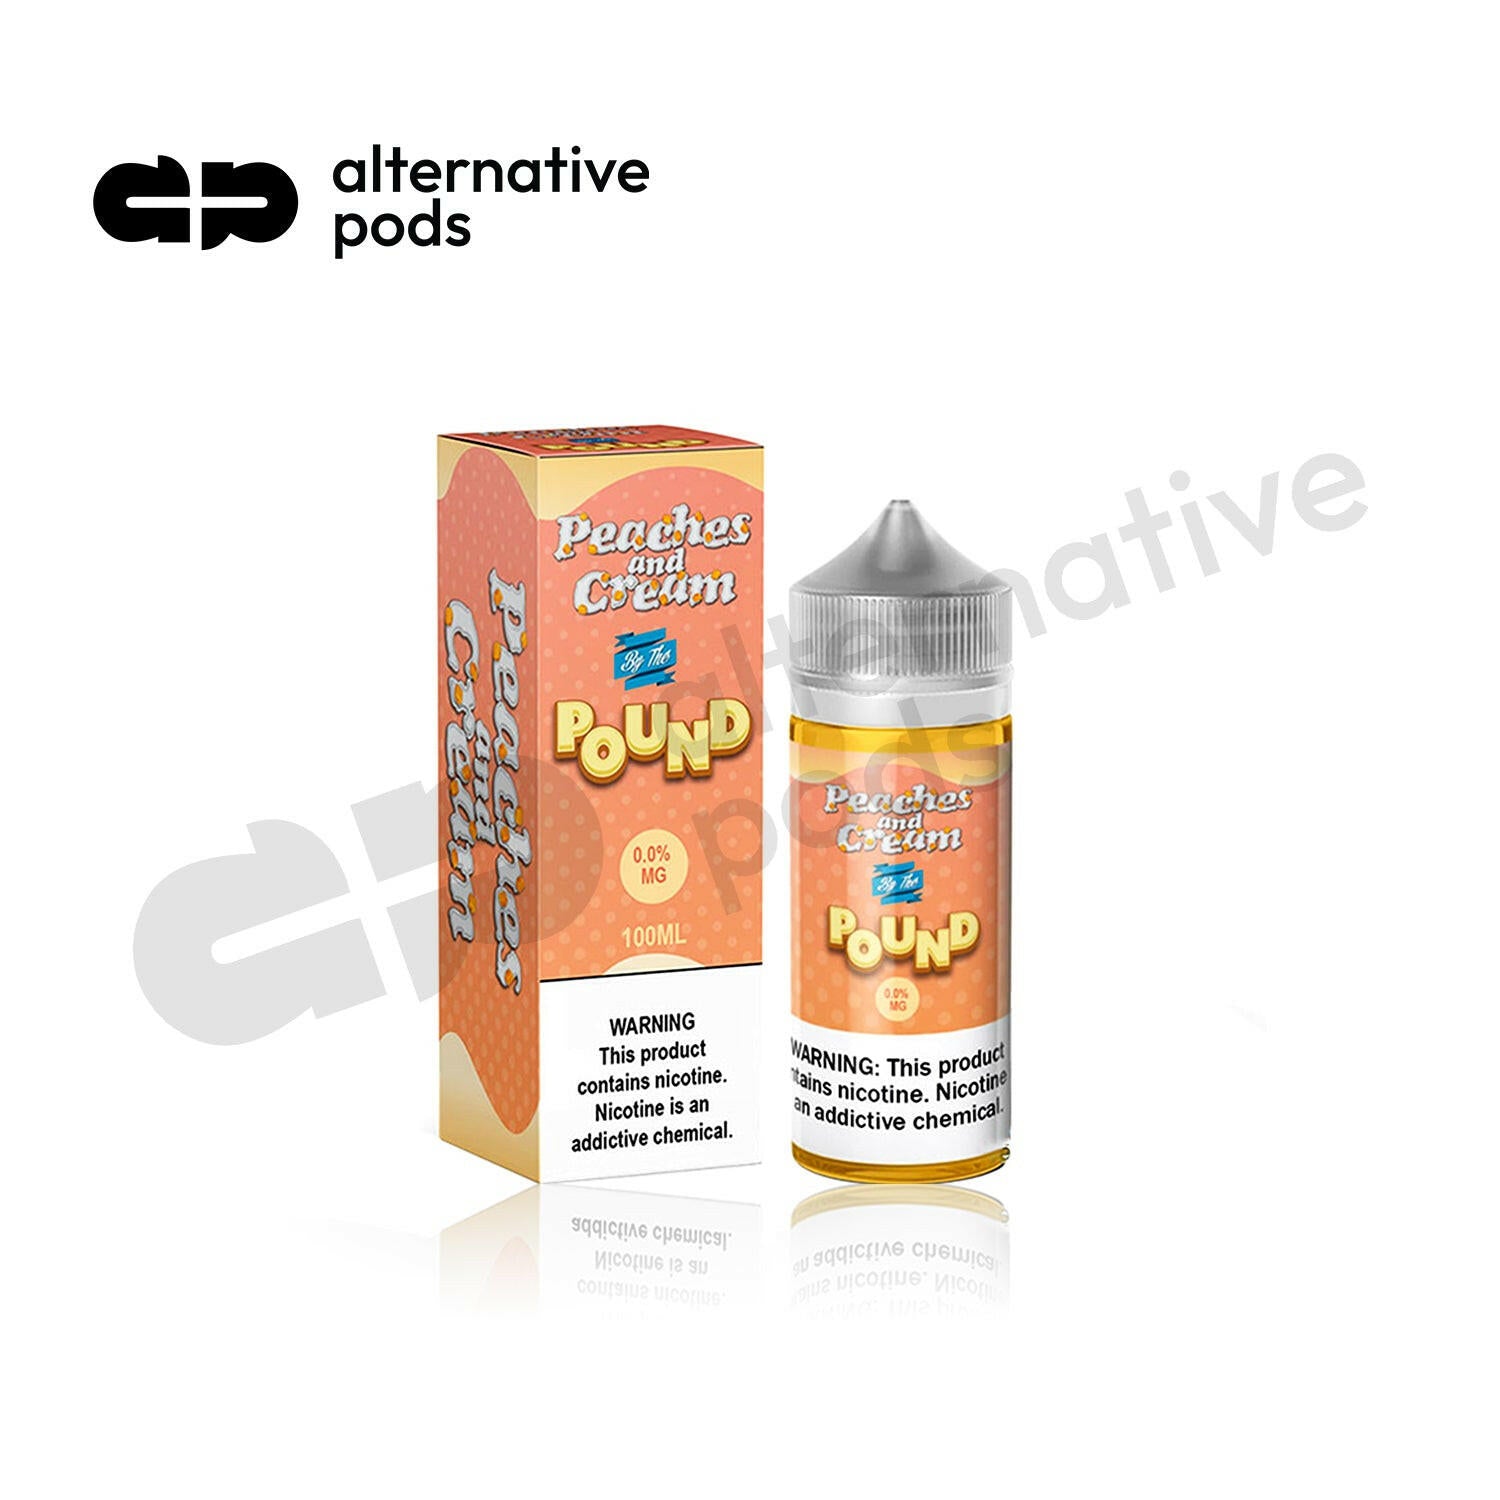 By The Pound E-Liquid 100ML - Online Vape Shop | Alternative pods | Affordable Vapor Store | Vape Disposables